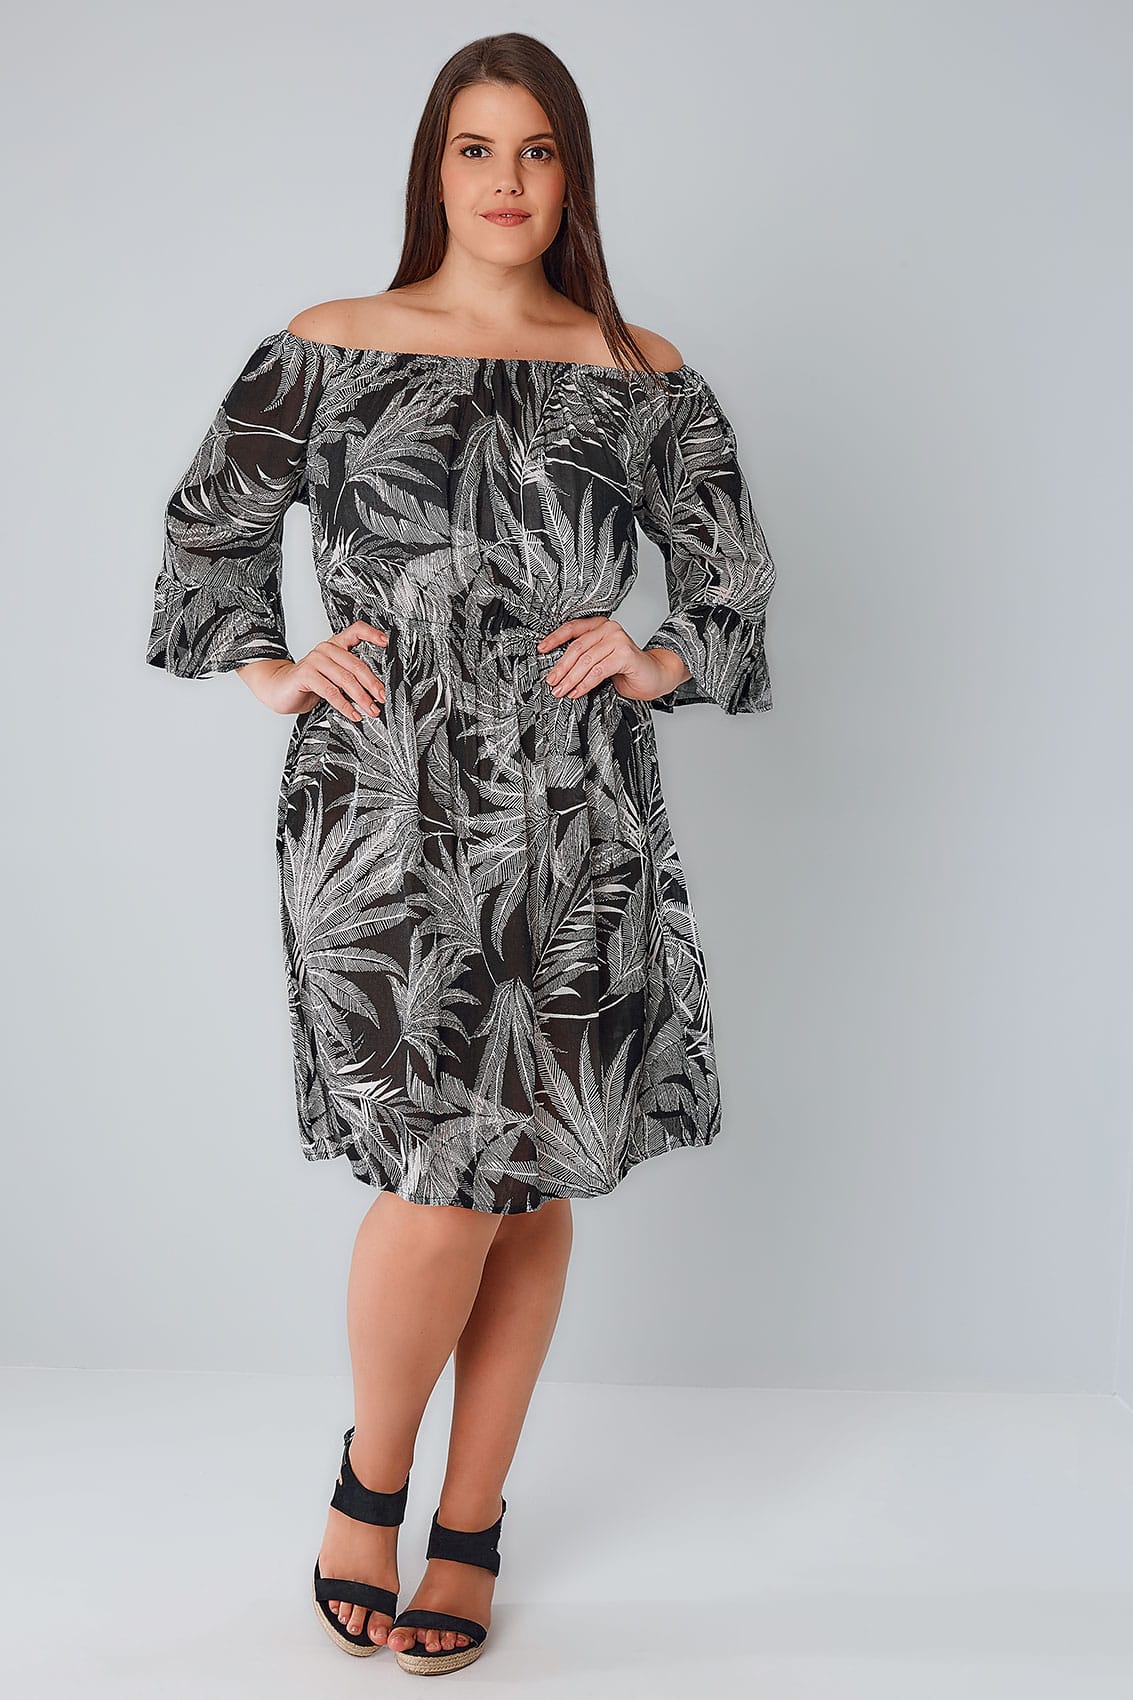 Black  White Palm Print Gypsy Dress, Plus Size 16 To 36-3177